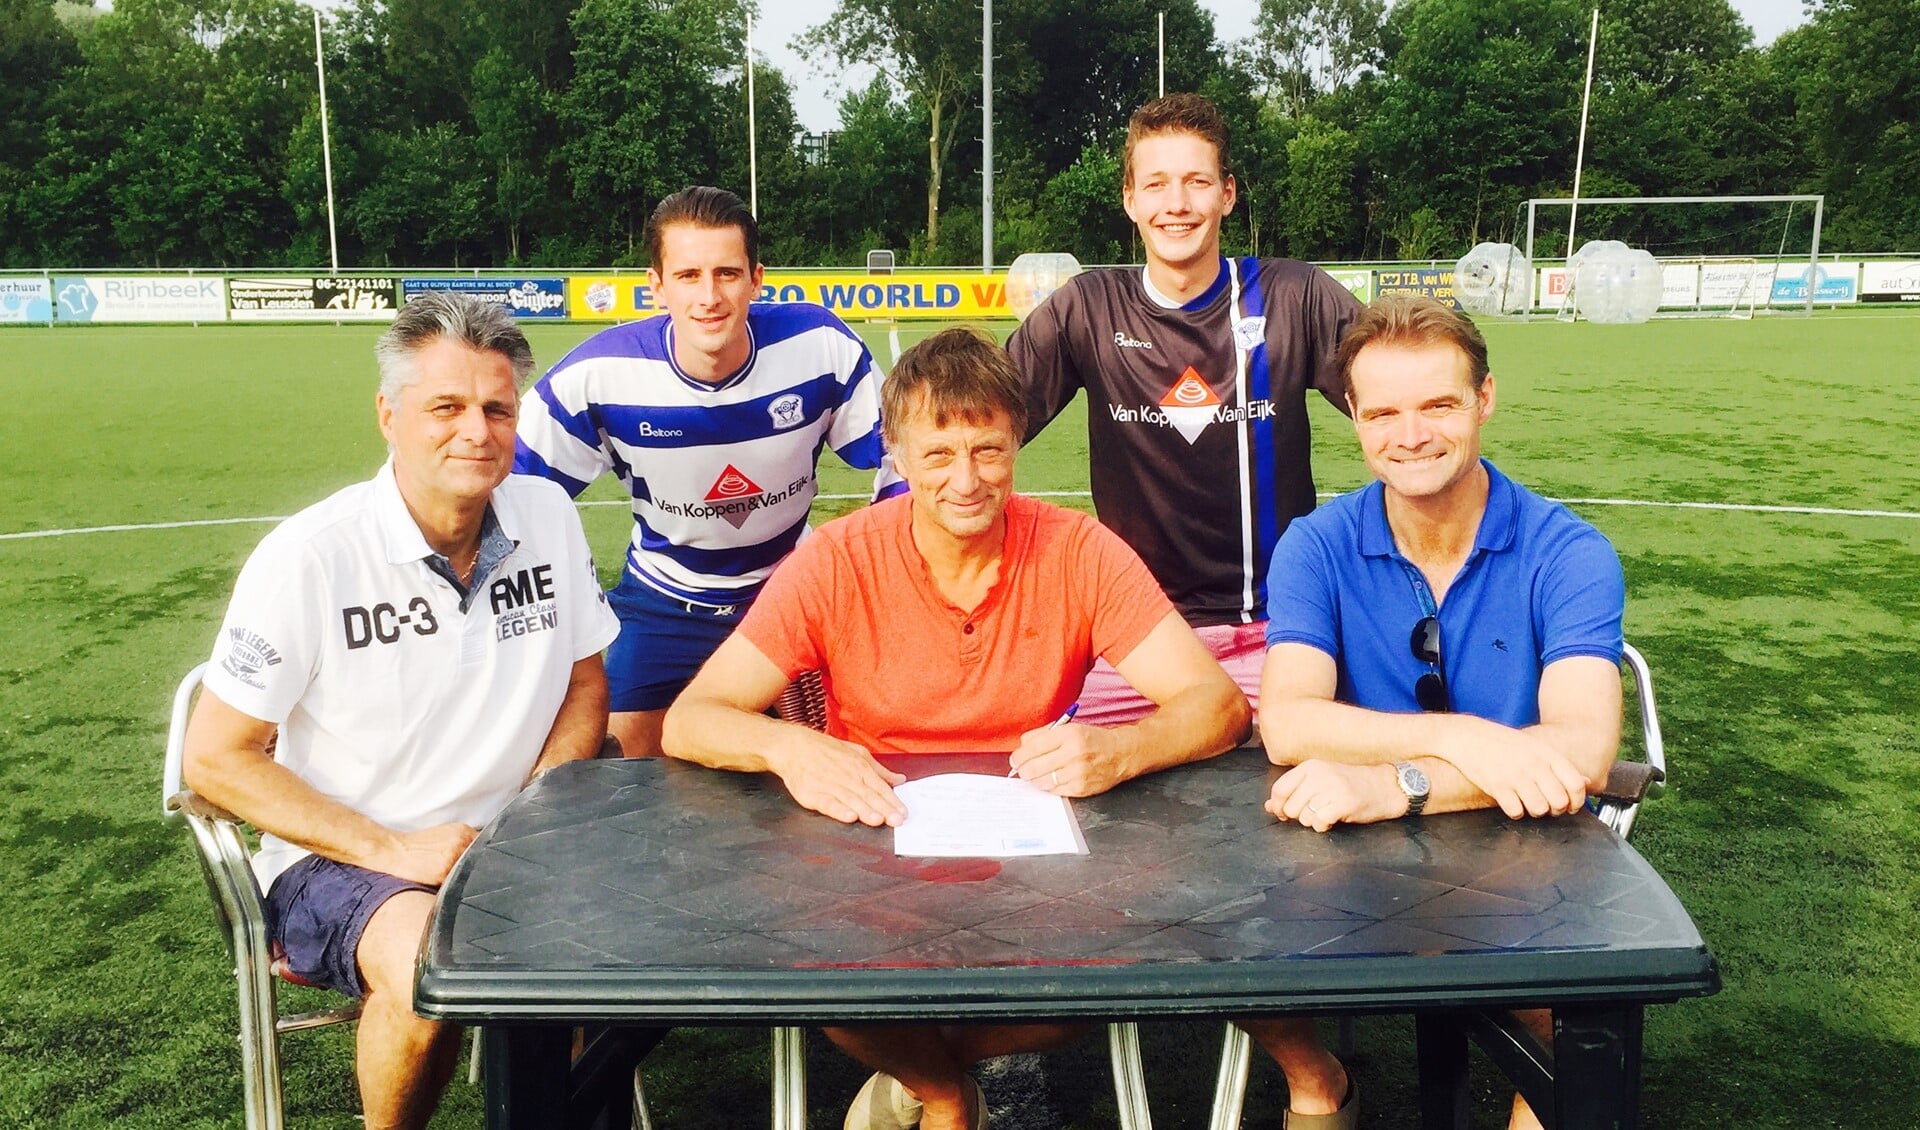 Peter van Koppen tekent de overeenkomst, geflankeerd door Oliveo voorzitters John Weijgertse (links) en Ruud Schalkwijk. Op de achtergrond Oliveo speler van het seizoen 2014-2015 Guy Luscuere (links) en vertrekkend spits Tim Bijnsdorp.